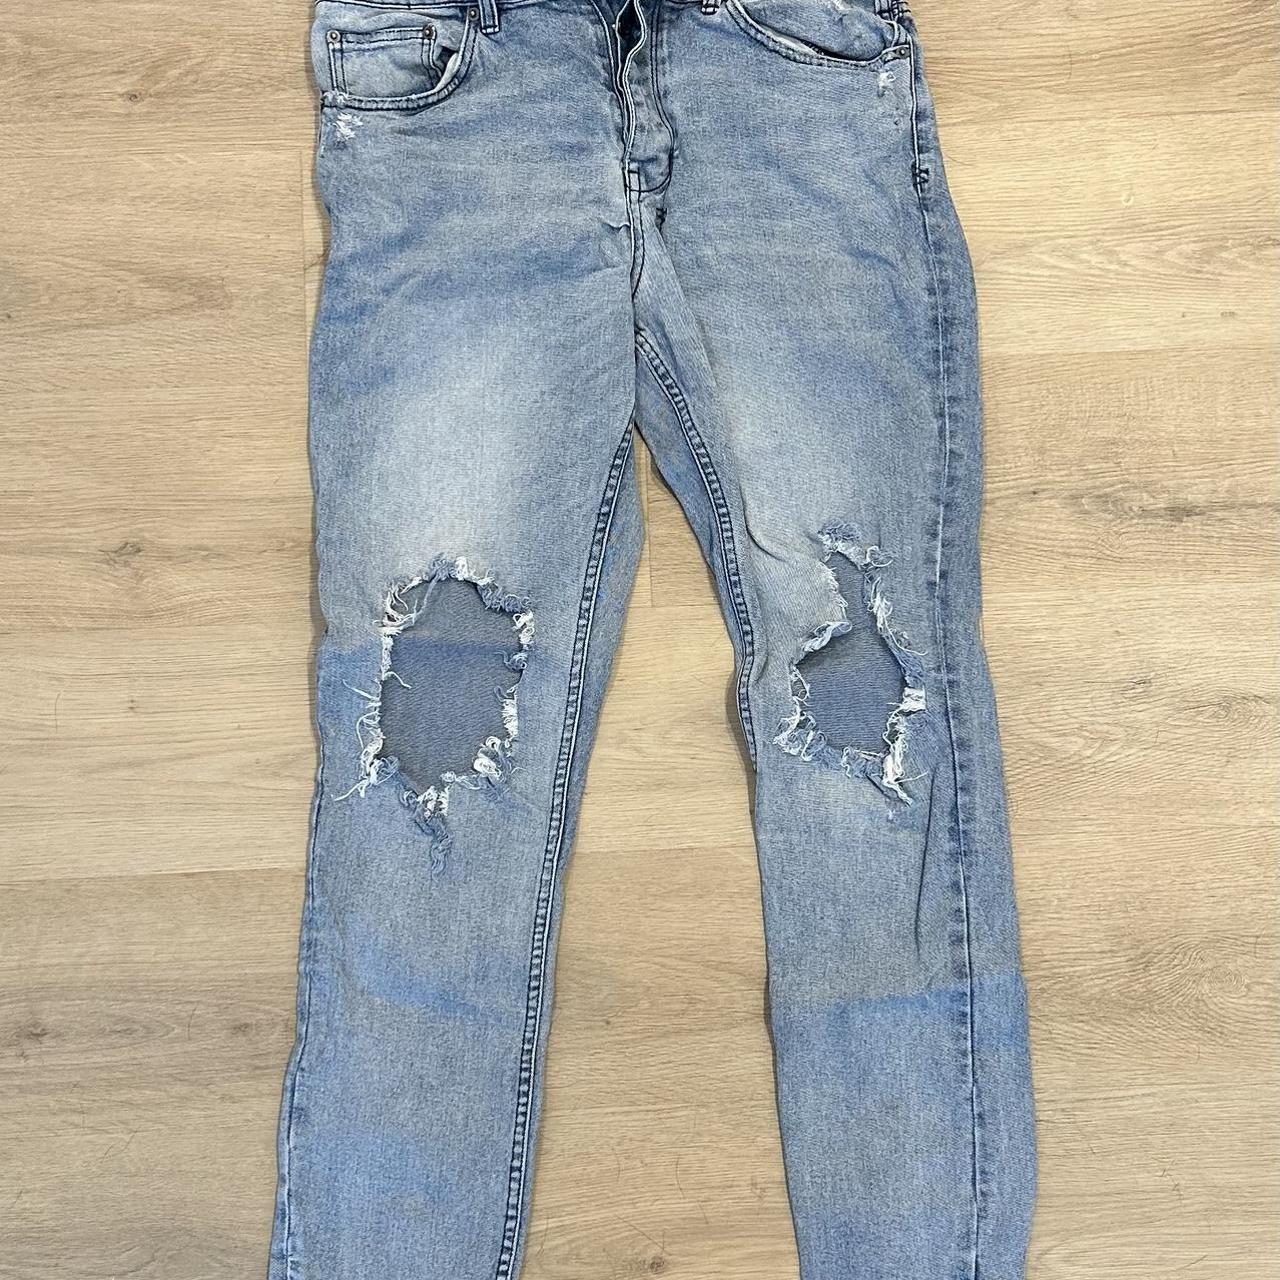 Ksubi men’s slim jeans 36x34 - Depop